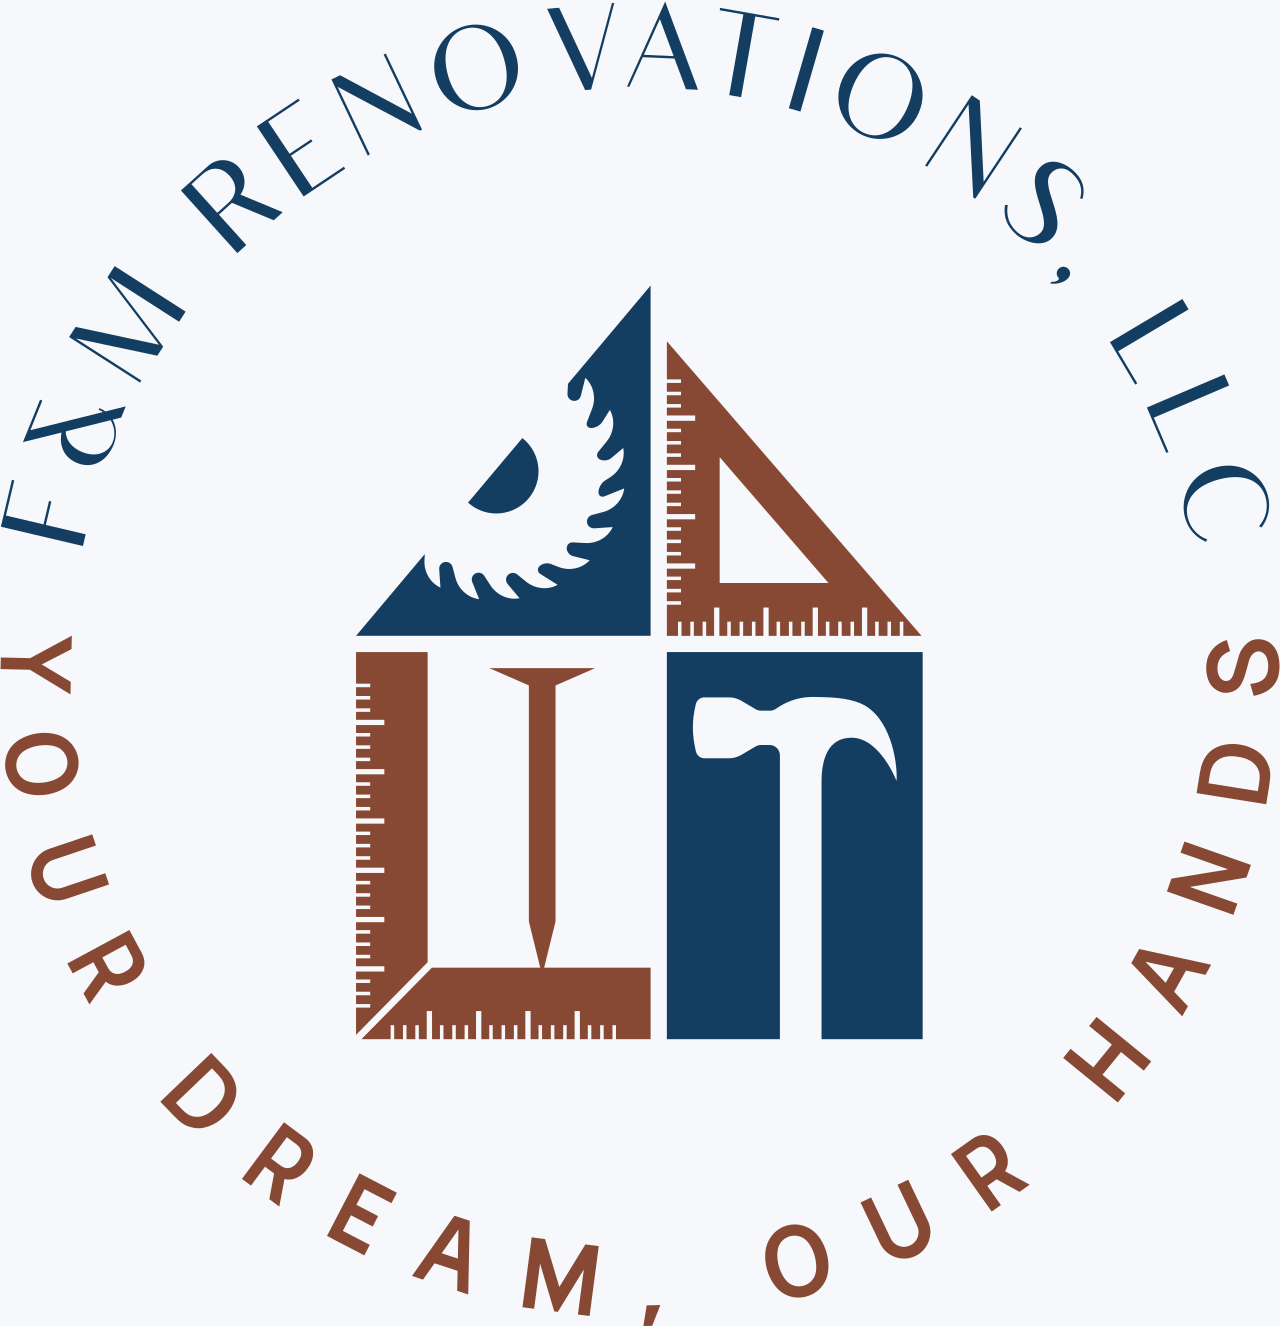 F&M RENOVATIONS, LLC's logo